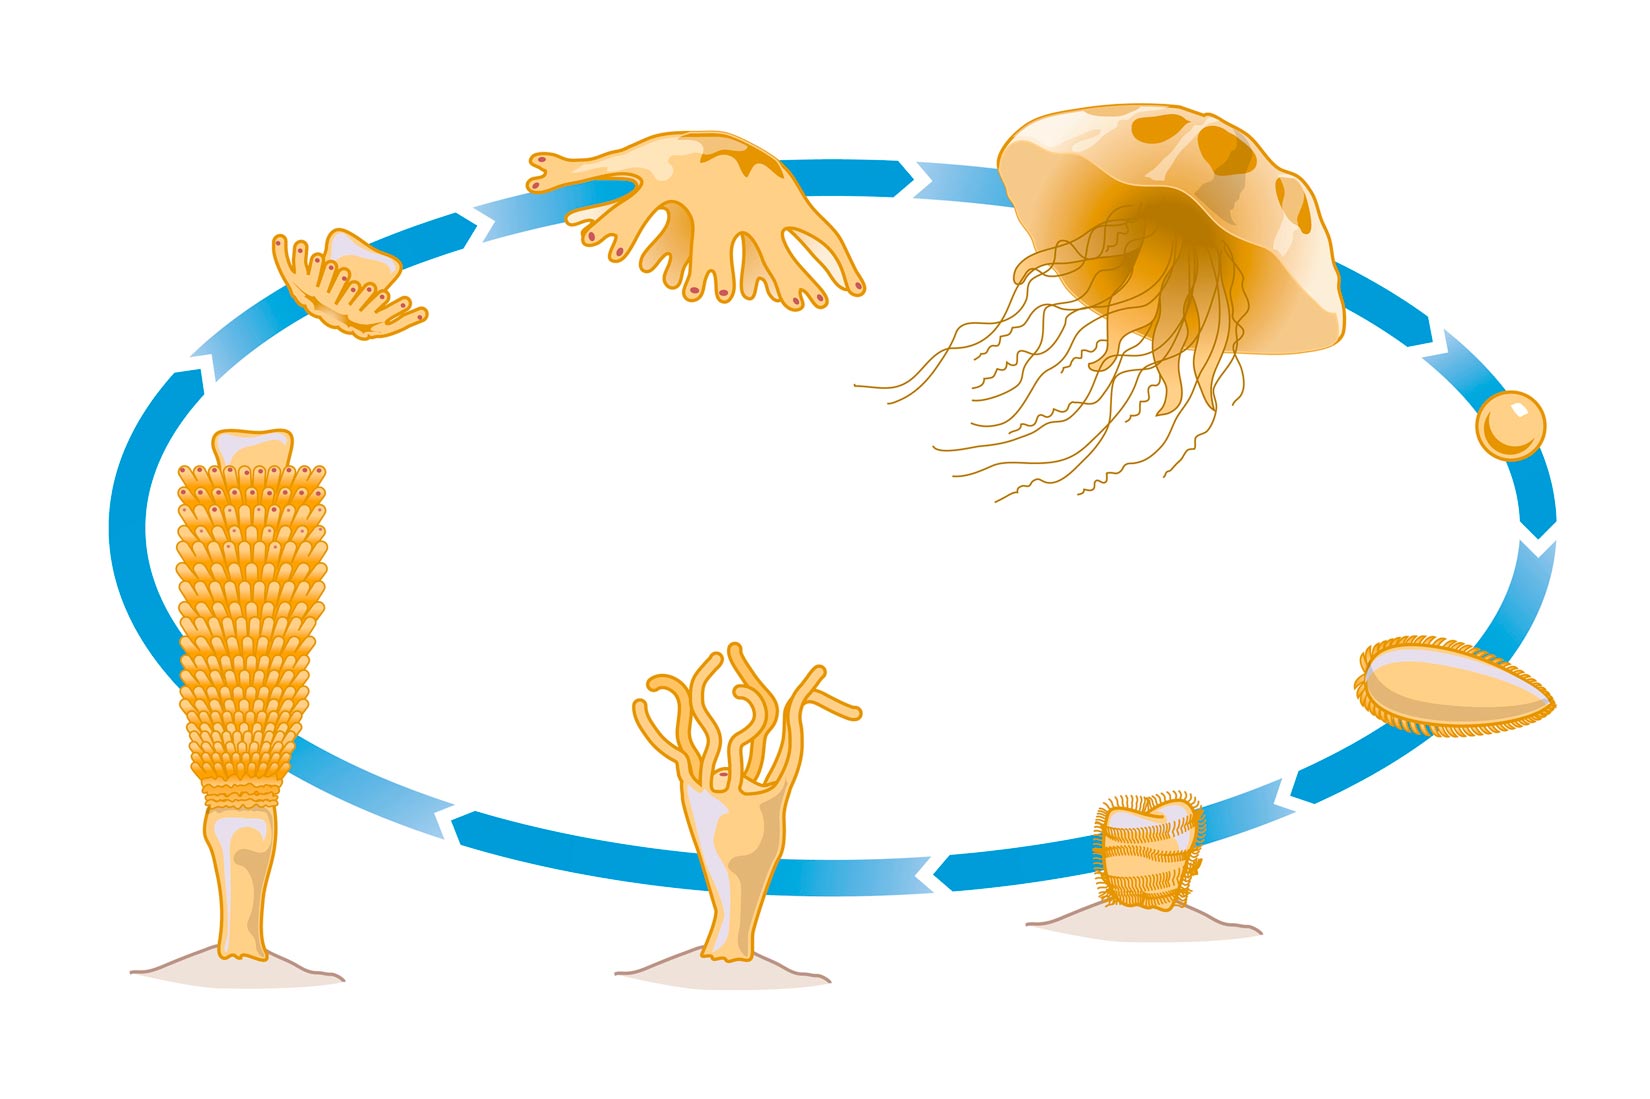 Slika je kružni prikaz spolnog razmnožavanja meduze u 8 razvojnih stadija